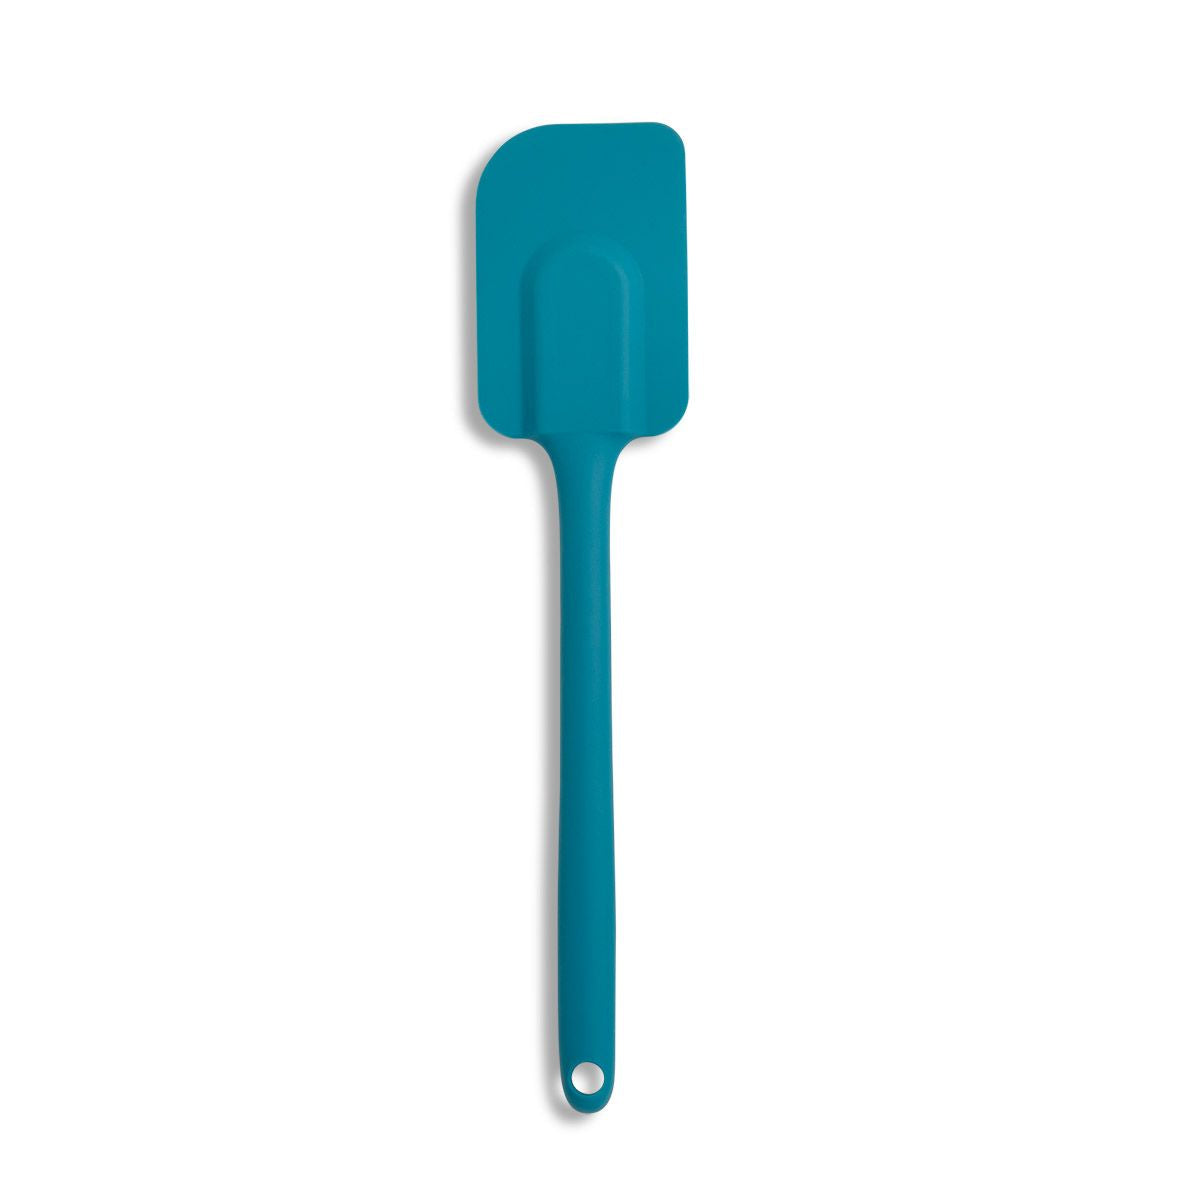 Tombolino Monocromo Pastel - Silicone morbido soft touch - Azzurro